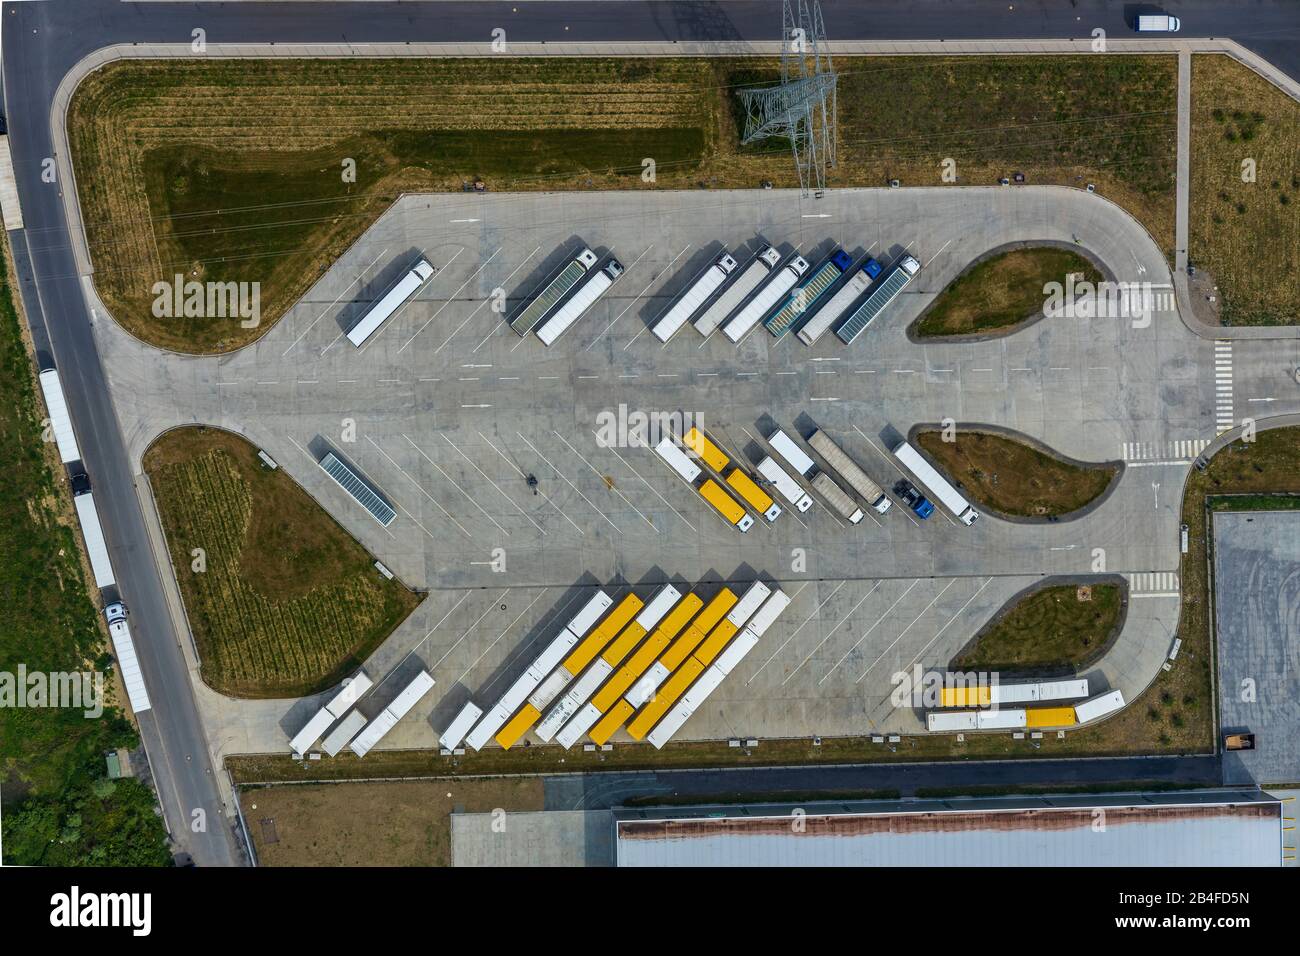 Luftbild des Lkw-Parkplatzes des Logistikzentrums Amazon Logistik Werne  GmbH - DTM1 in Werne, Ruhrgebiet, Nordrhein-Westfalen, Deutschland  Stockfotografie - Alamy